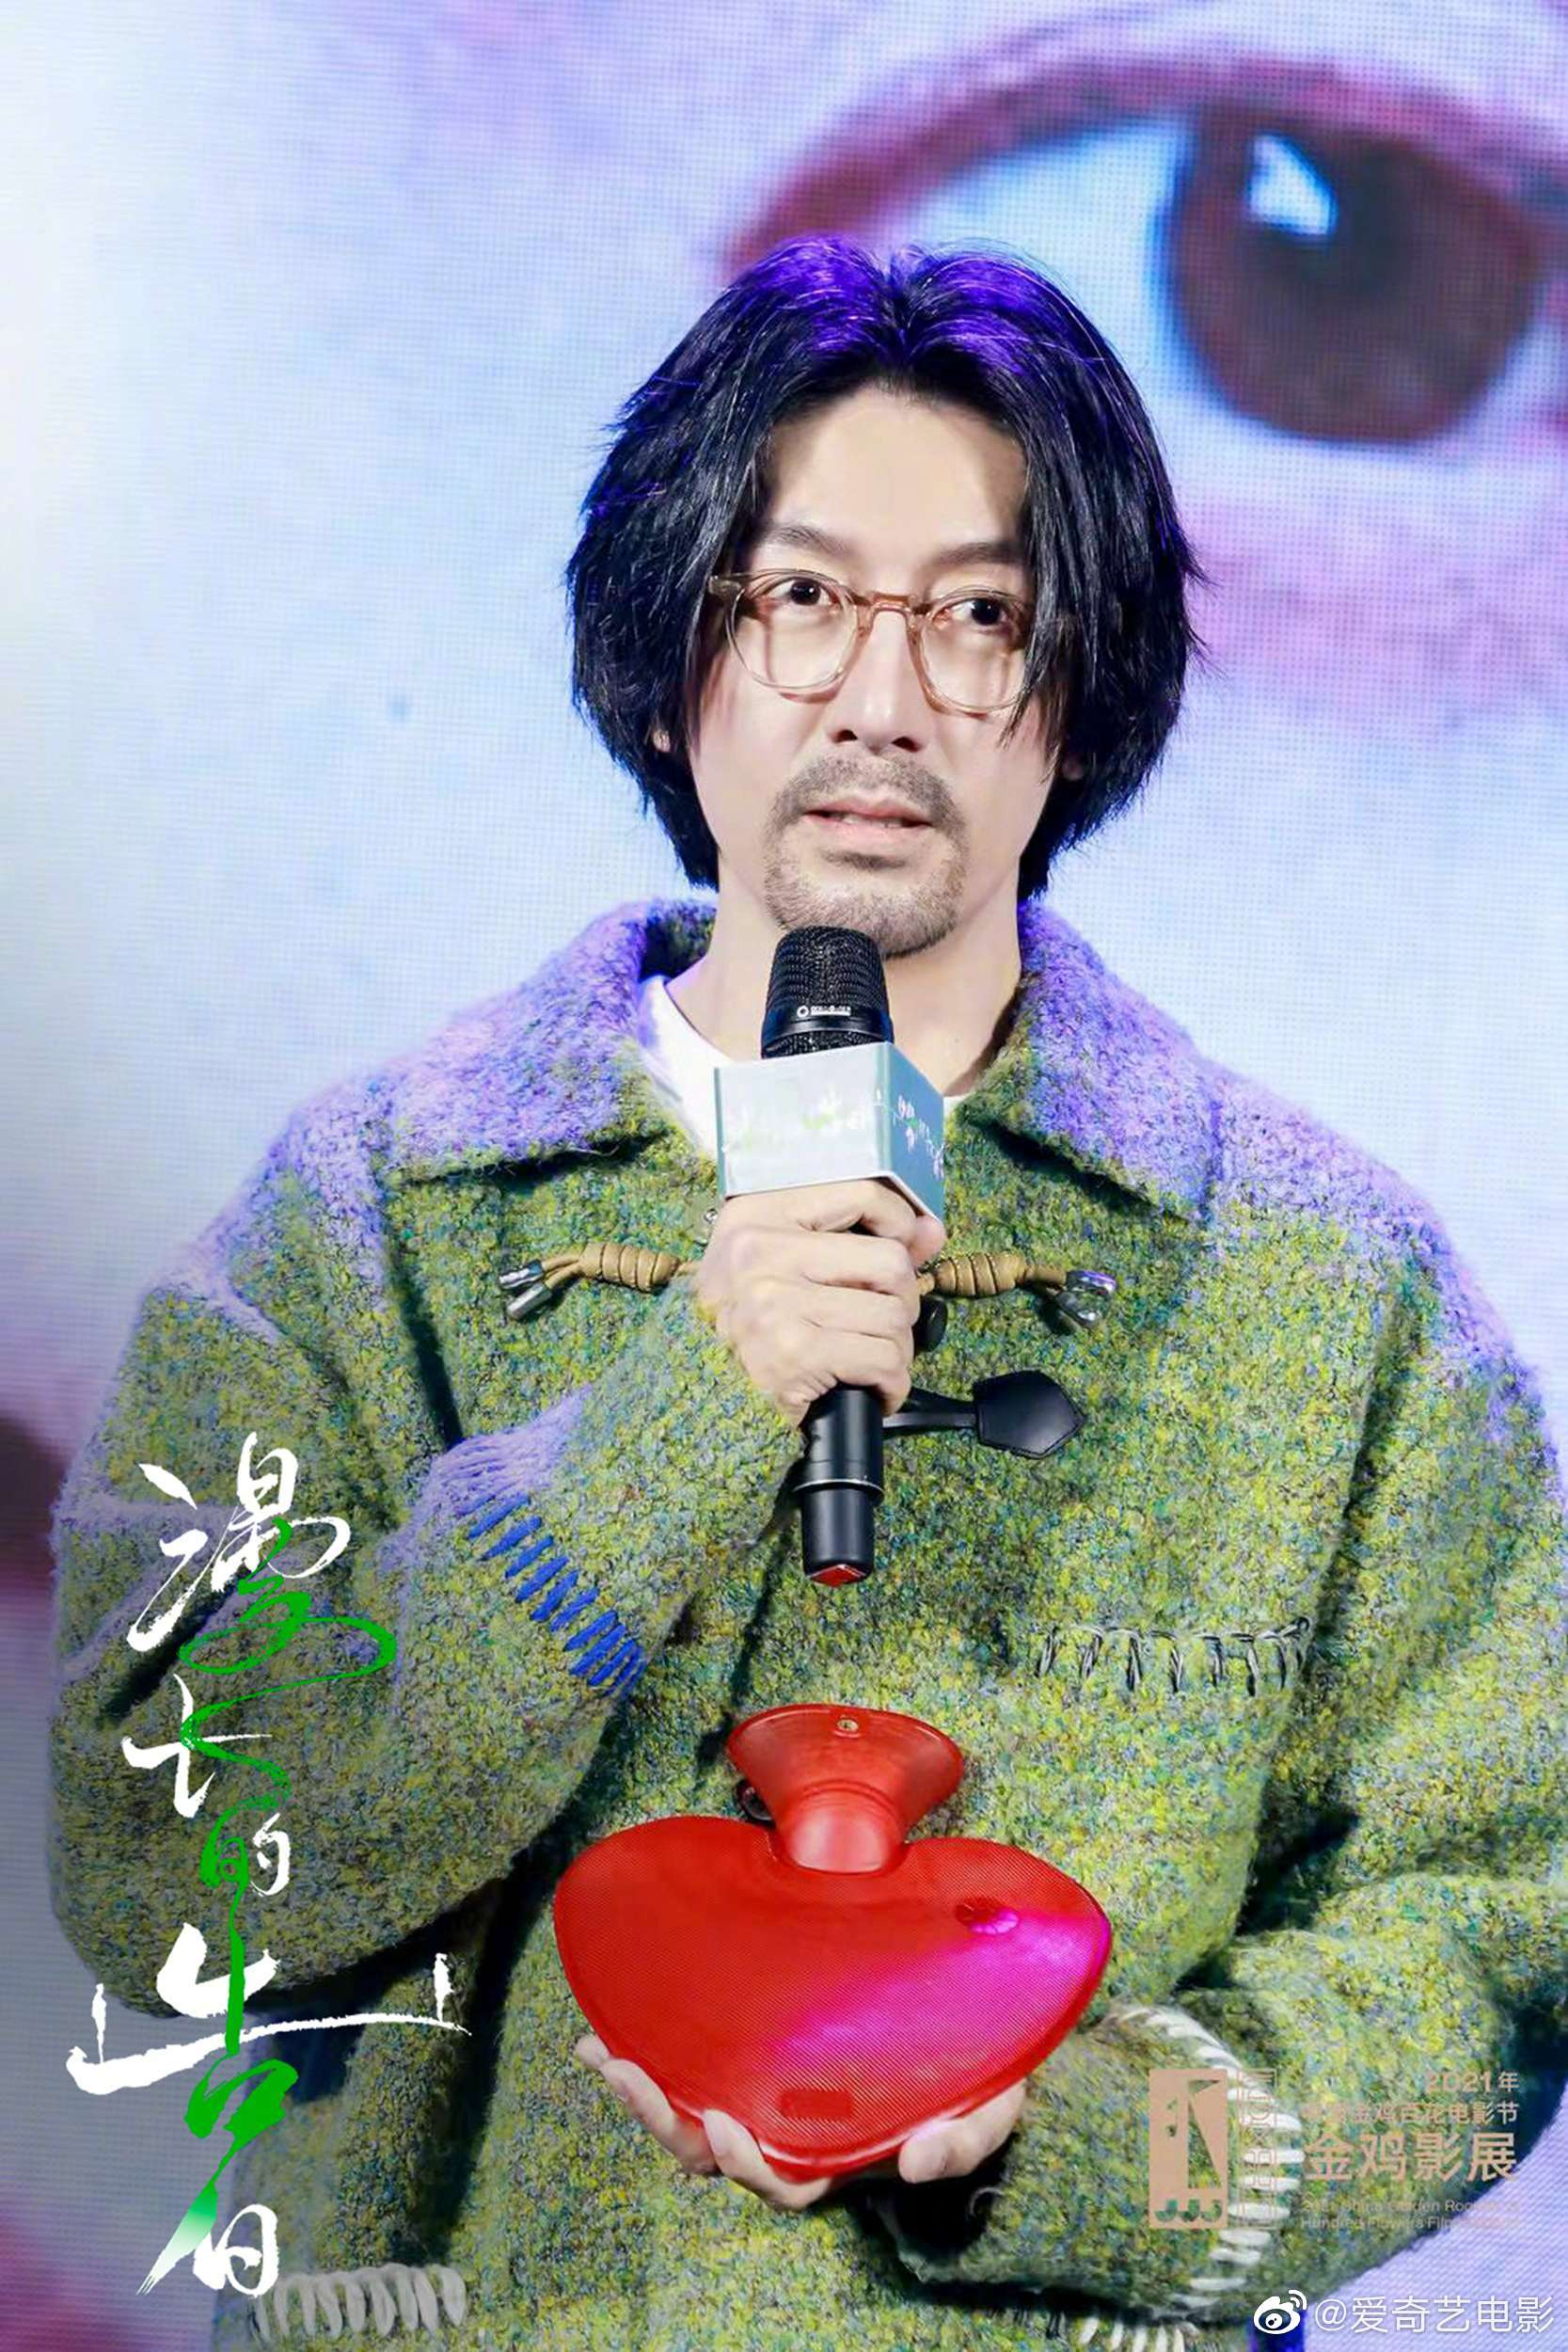 你对张鲁一将在《藏海花》中饰演吴邪一角怎么看? 